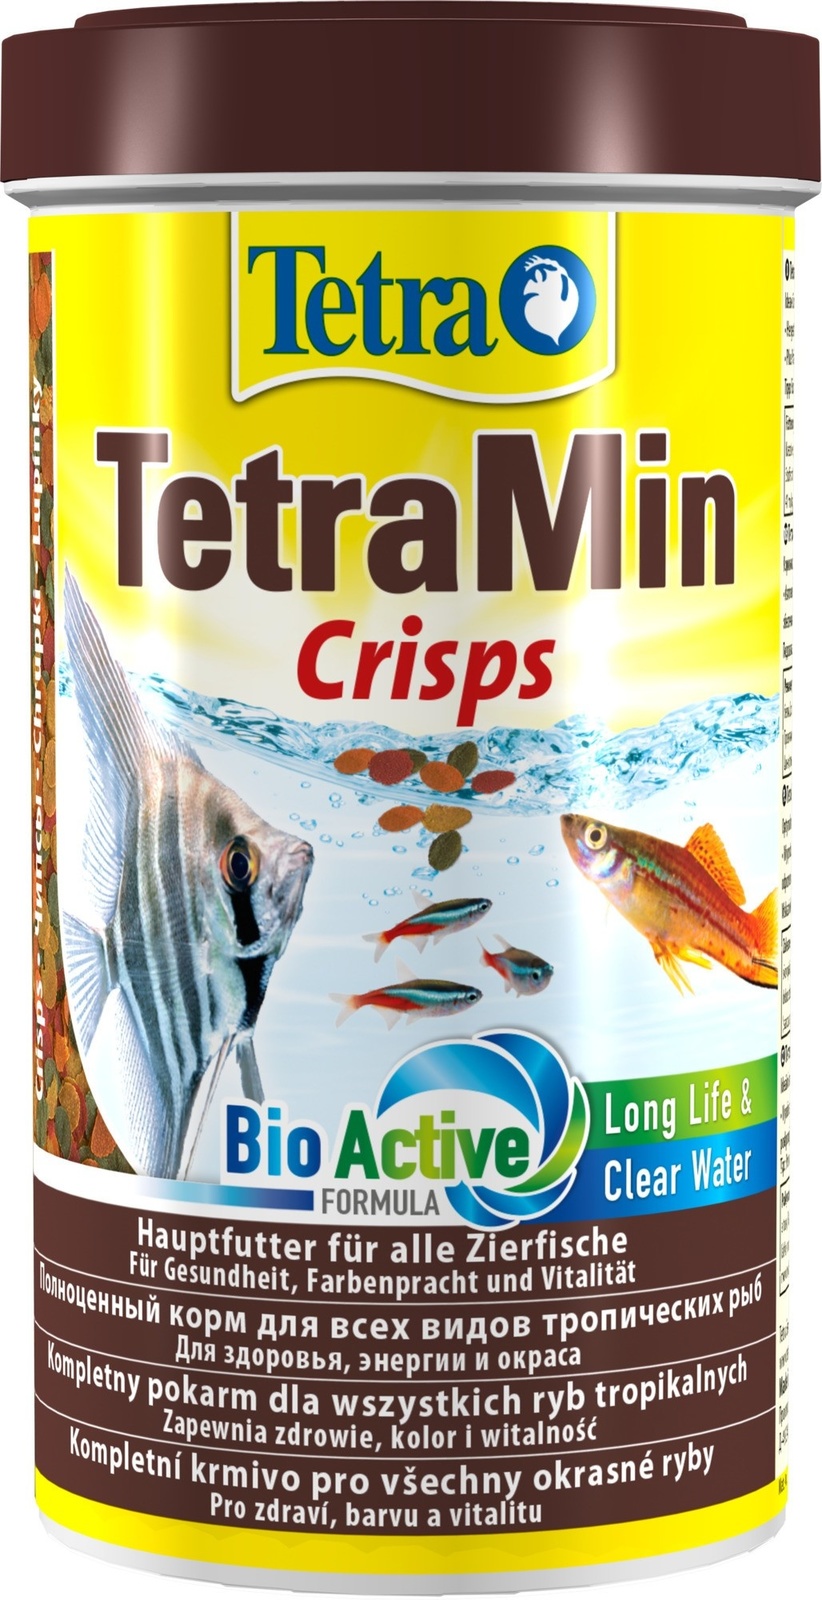 Tetra (корма) Tetra (корма) корм для всех видов тропических рыб, чипсы (110 г) tetra корма tetra корма корм для бойцовых рыб и других видов лабиринтовых имитация мотыля 5 г